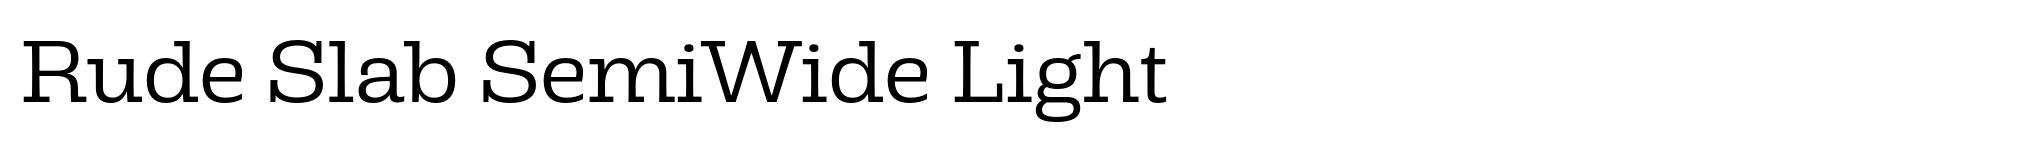 Rude Slab SemiWide Light image